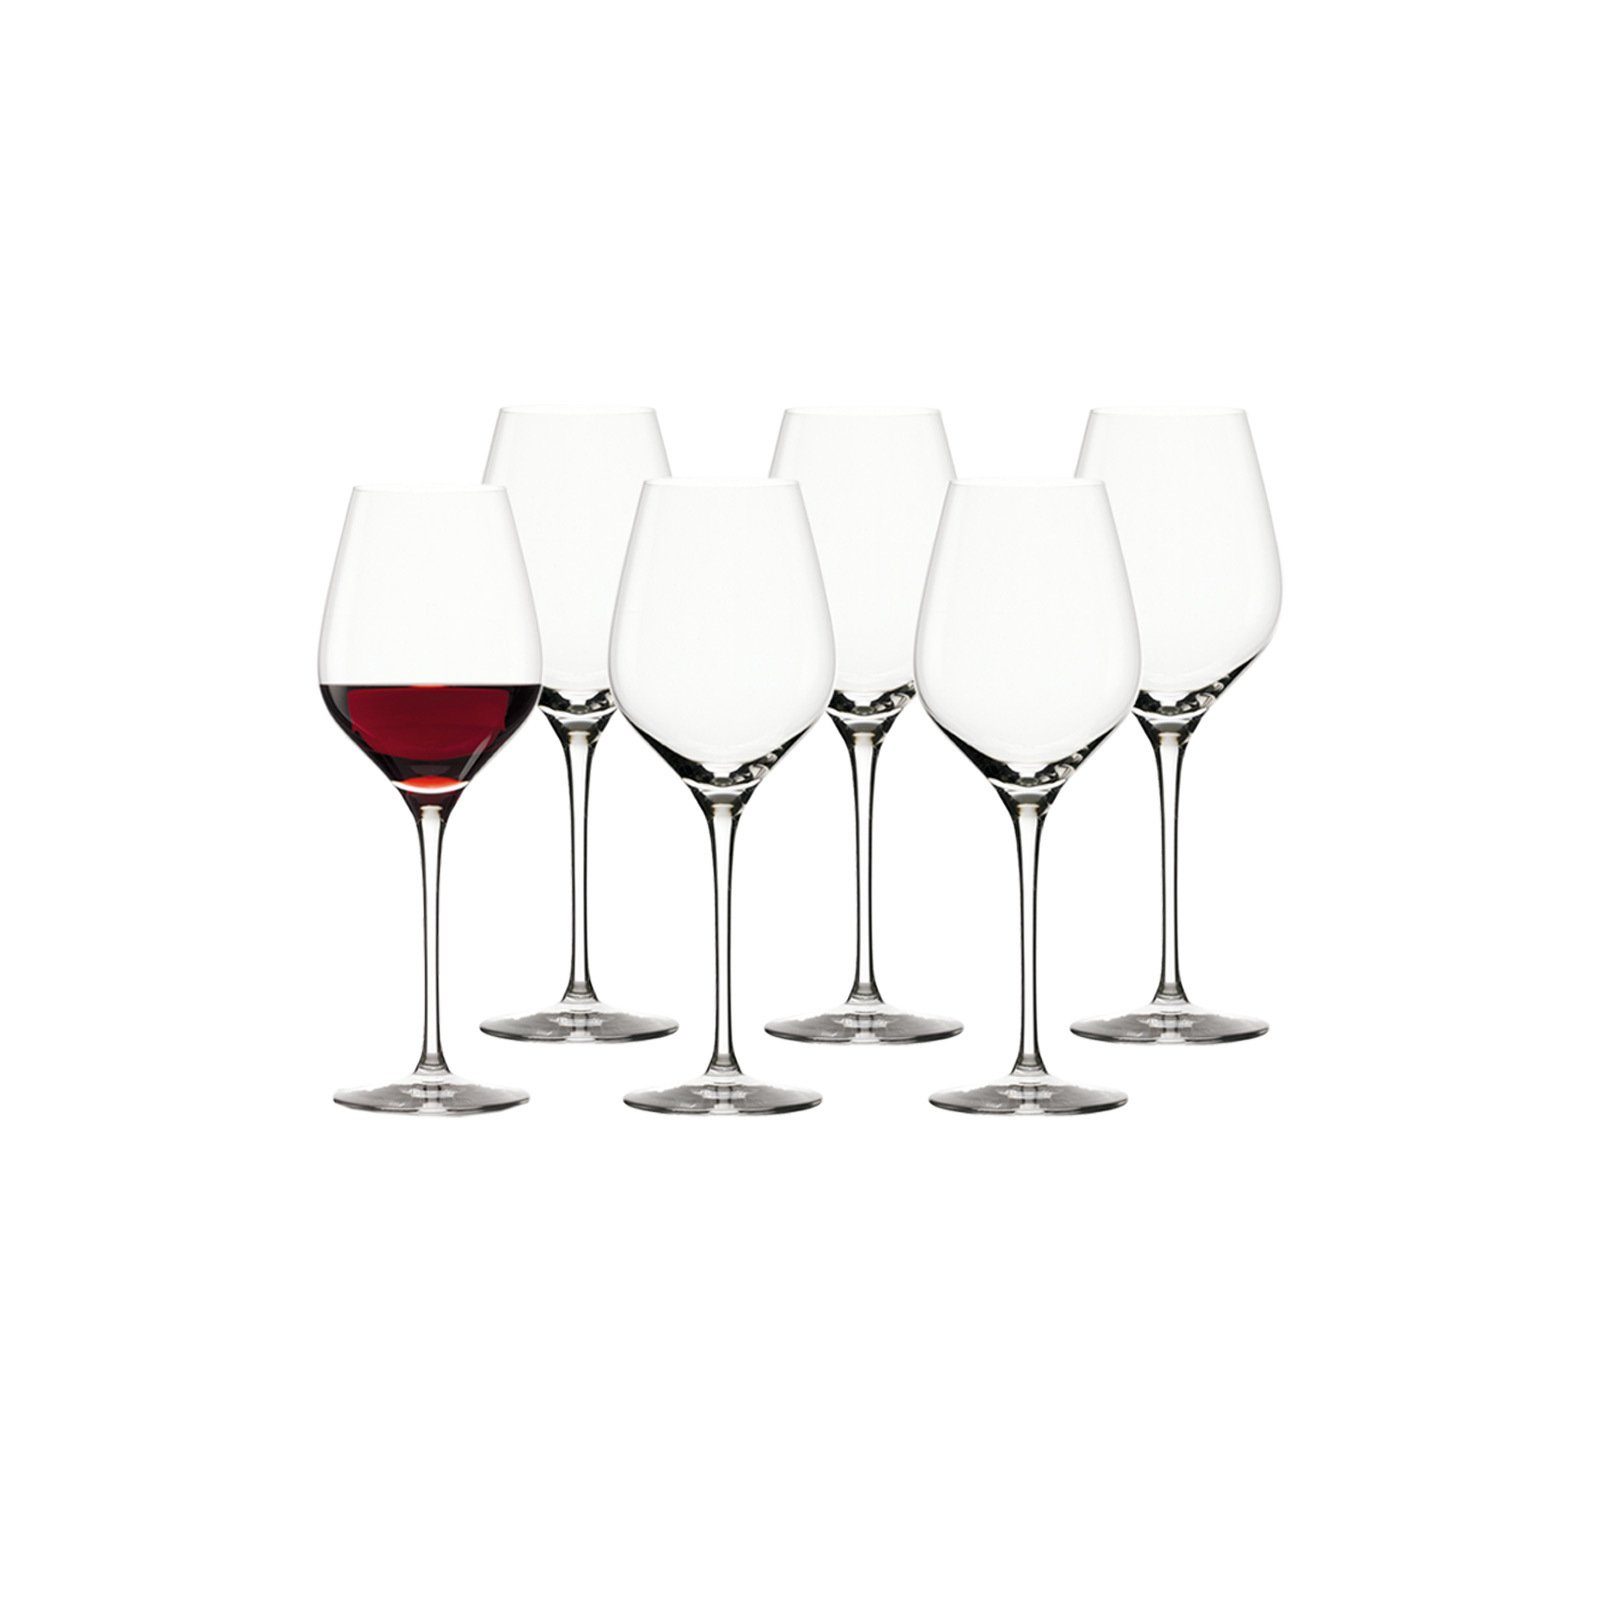 18er Glas Set, Royal und Wein- Sektgläser Stölzle Exquisit Glas